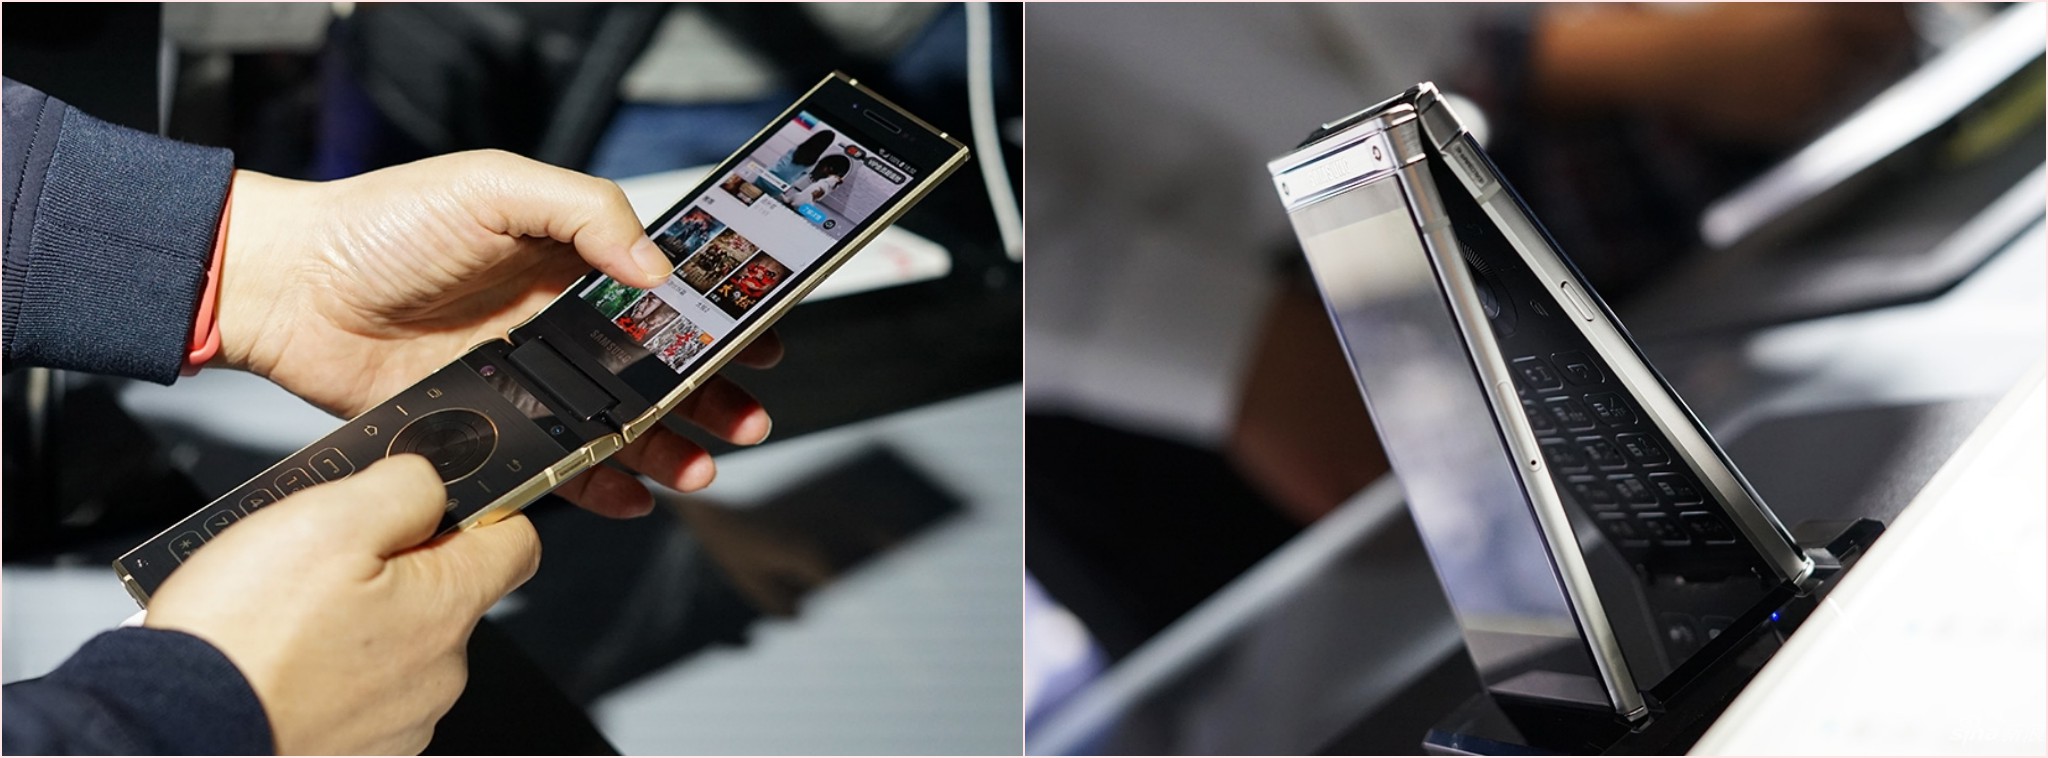 Samsung ra mắt W2018: camera thay đổi được khẩu độ 1.5 và 2.4